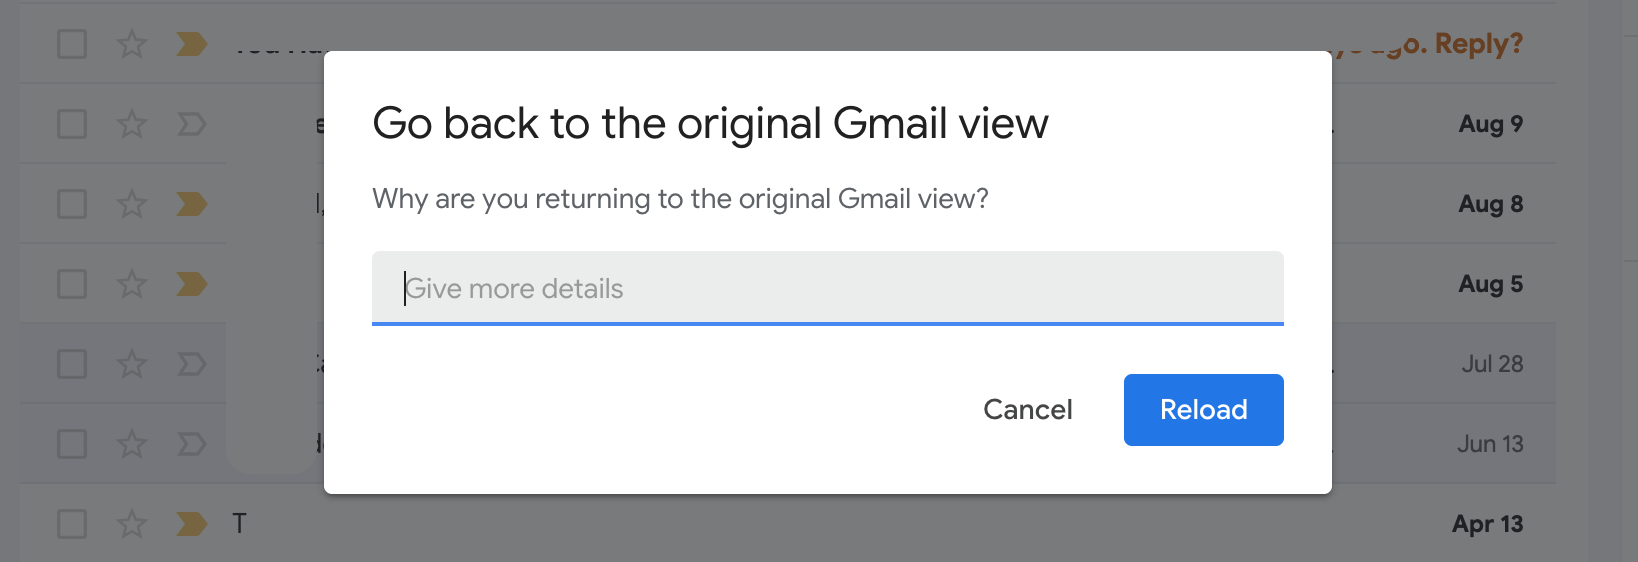 Campo de comentarios de Gmail para explicar por qué no desea su nuevo aspecto